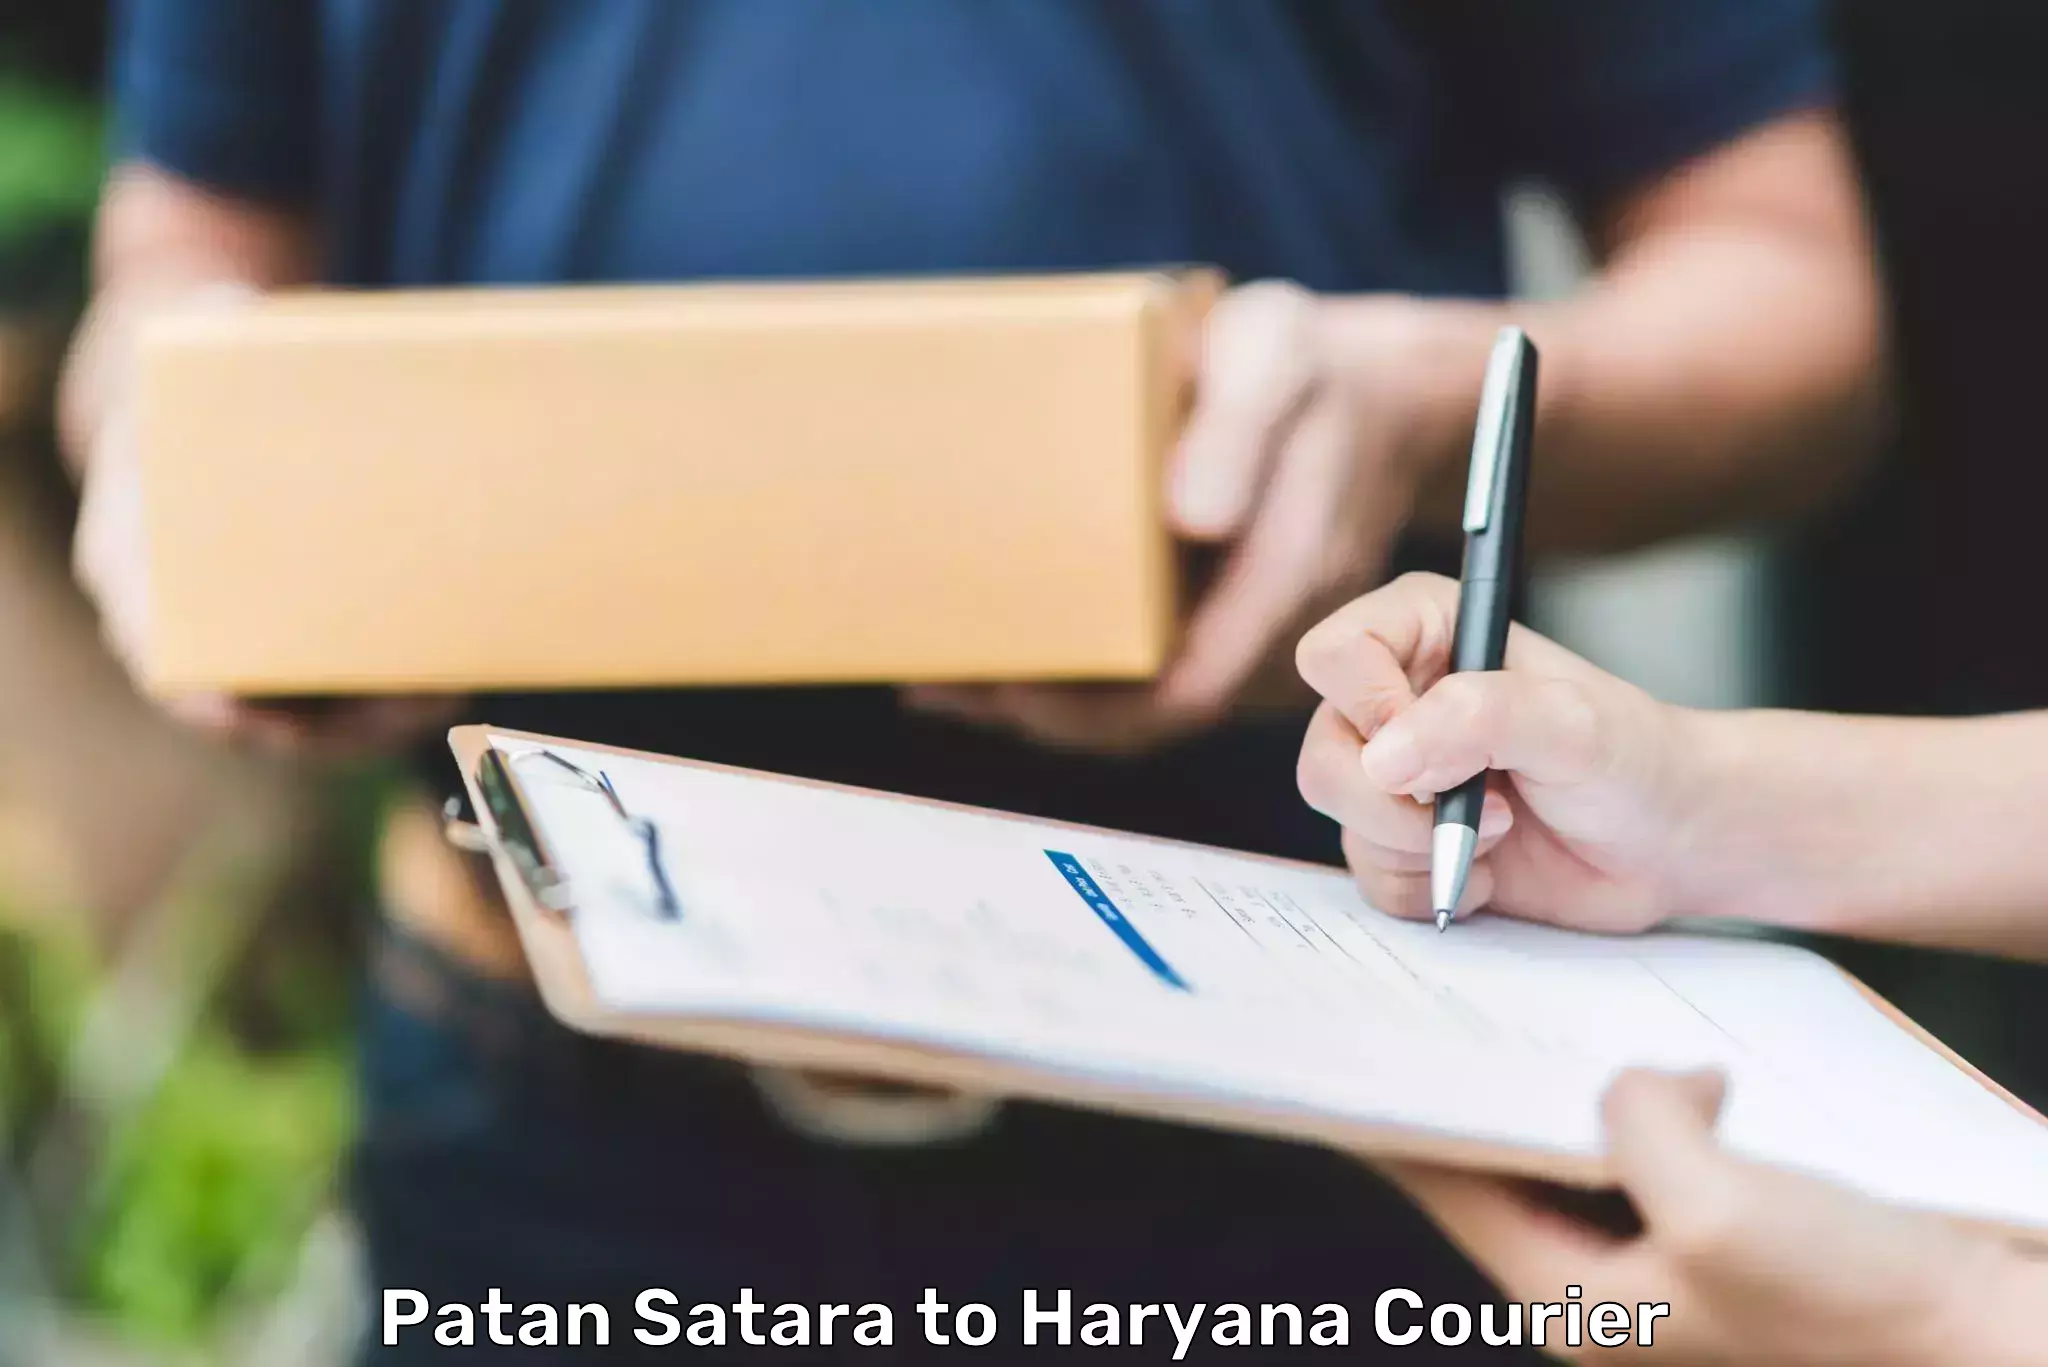 24/7 courier service Patan Satara to Yamuna Nagar